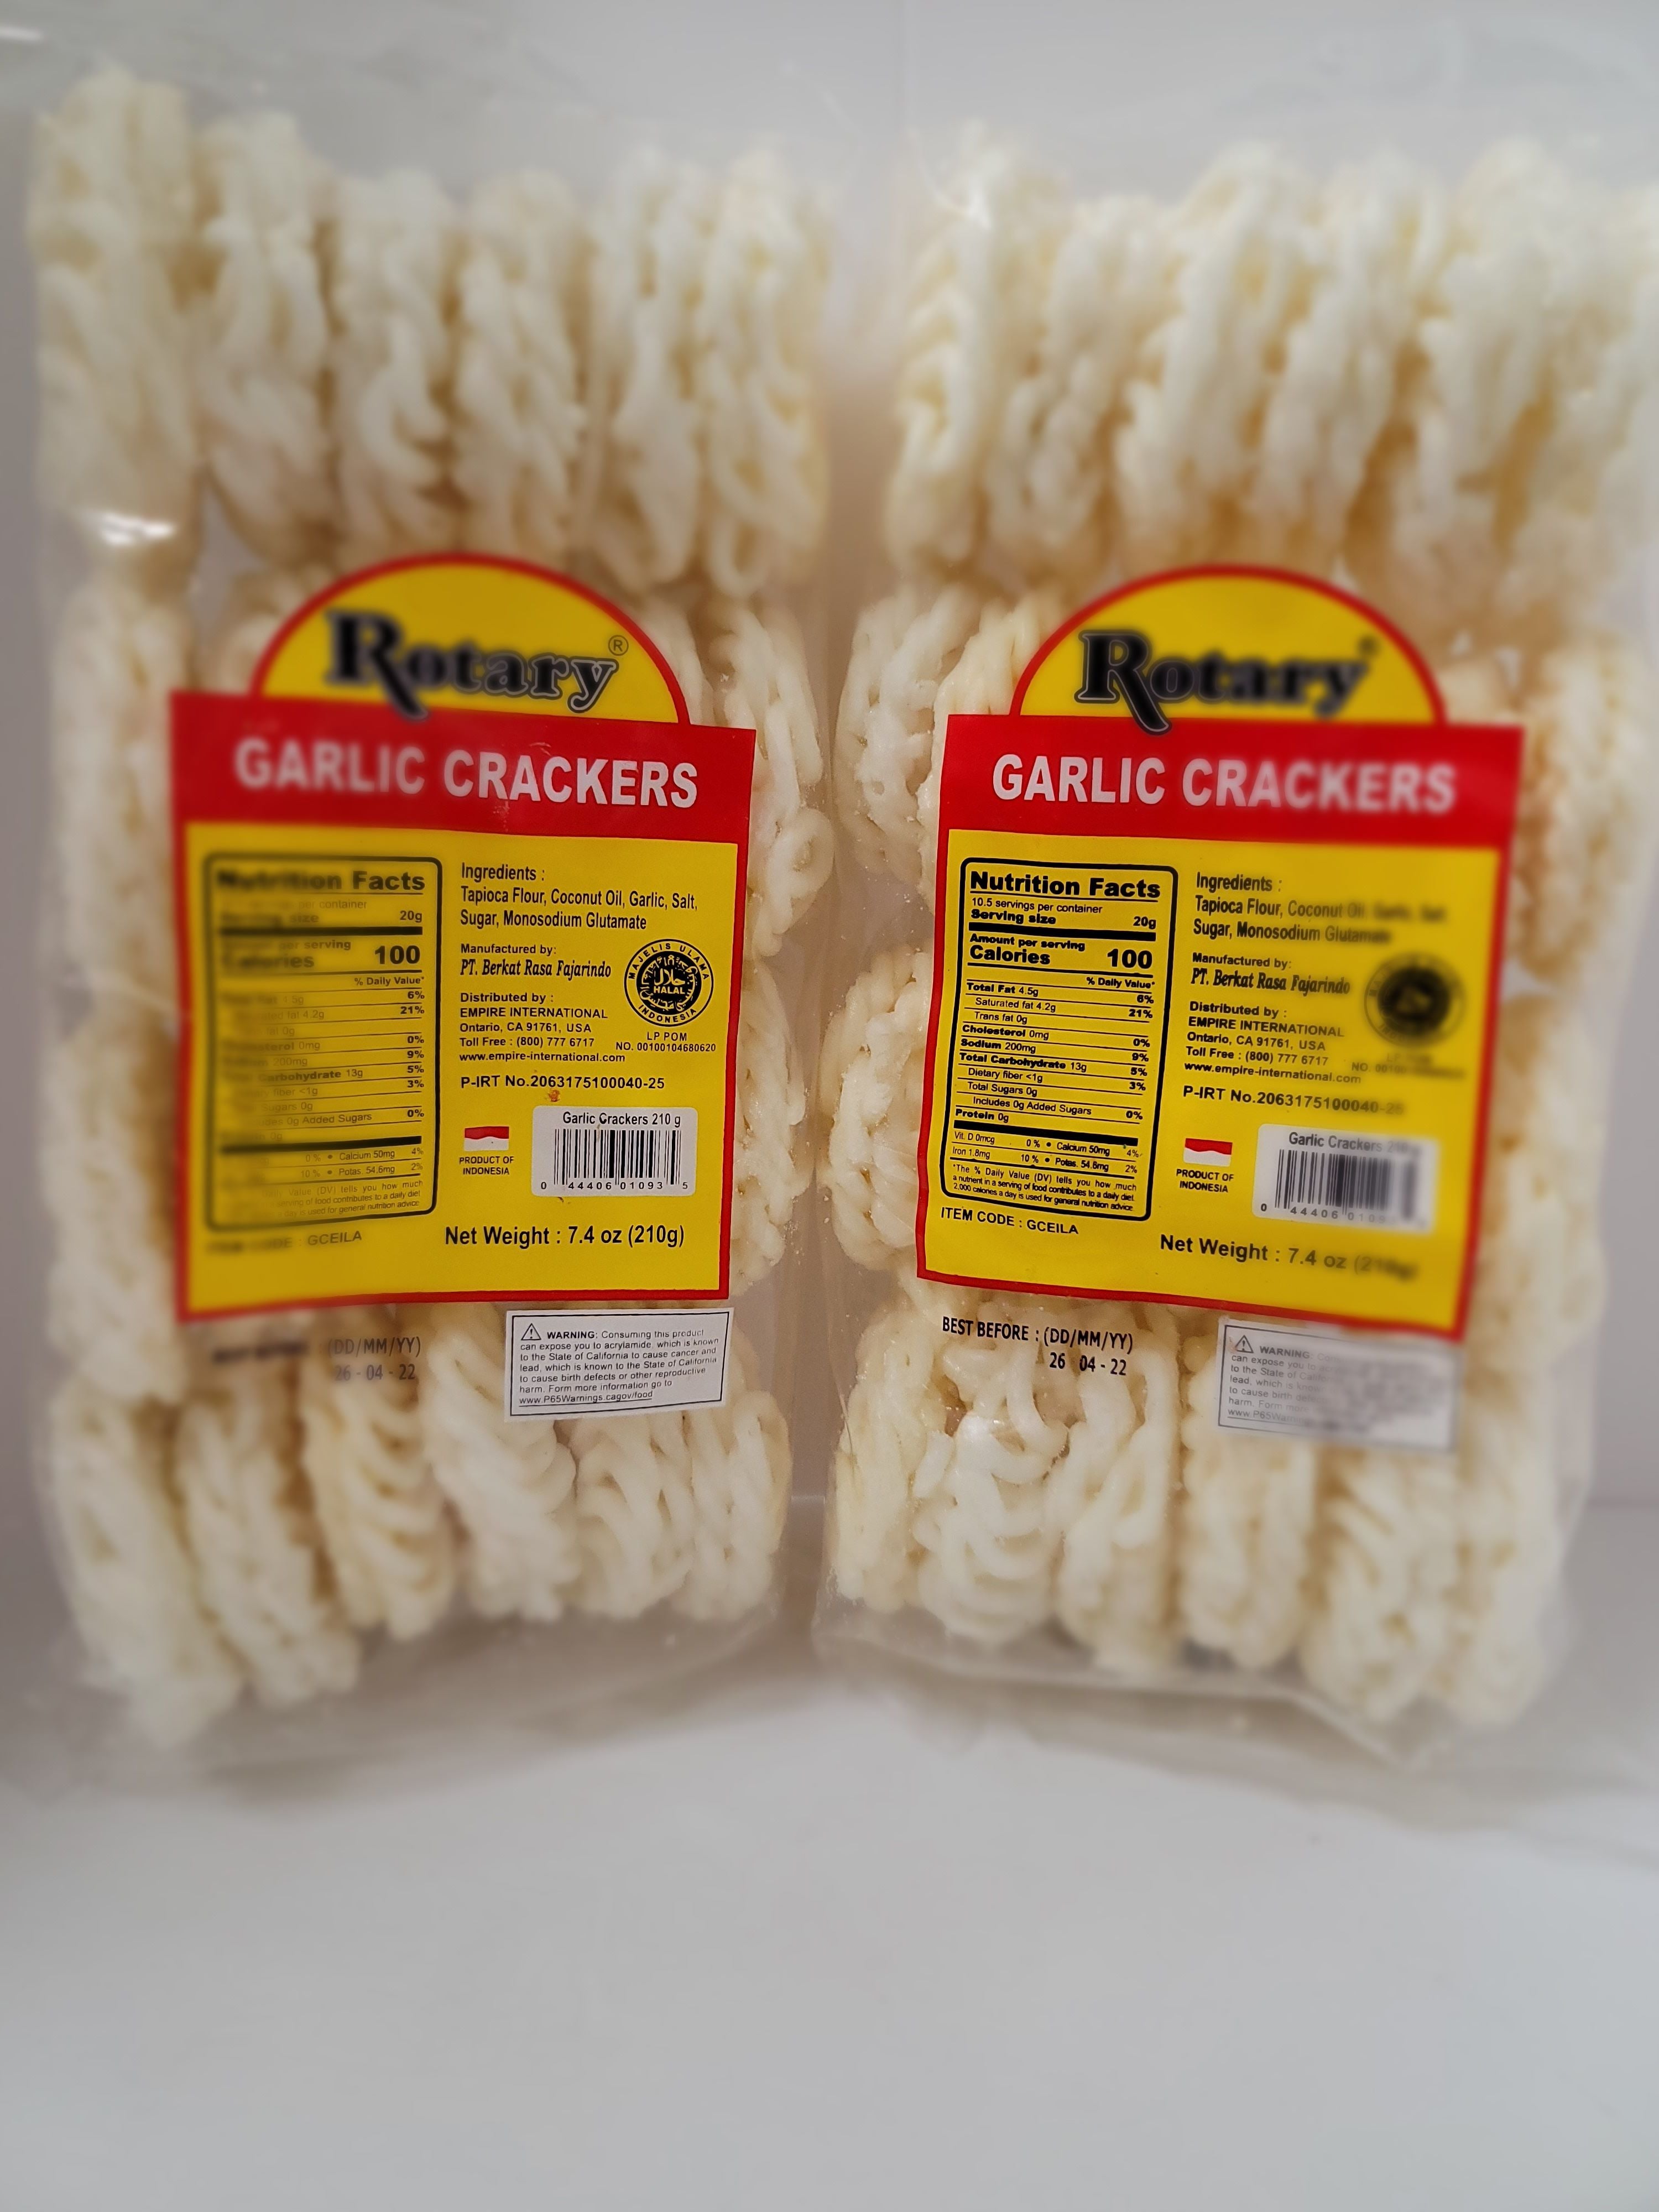 Rotary Garlic Crackers